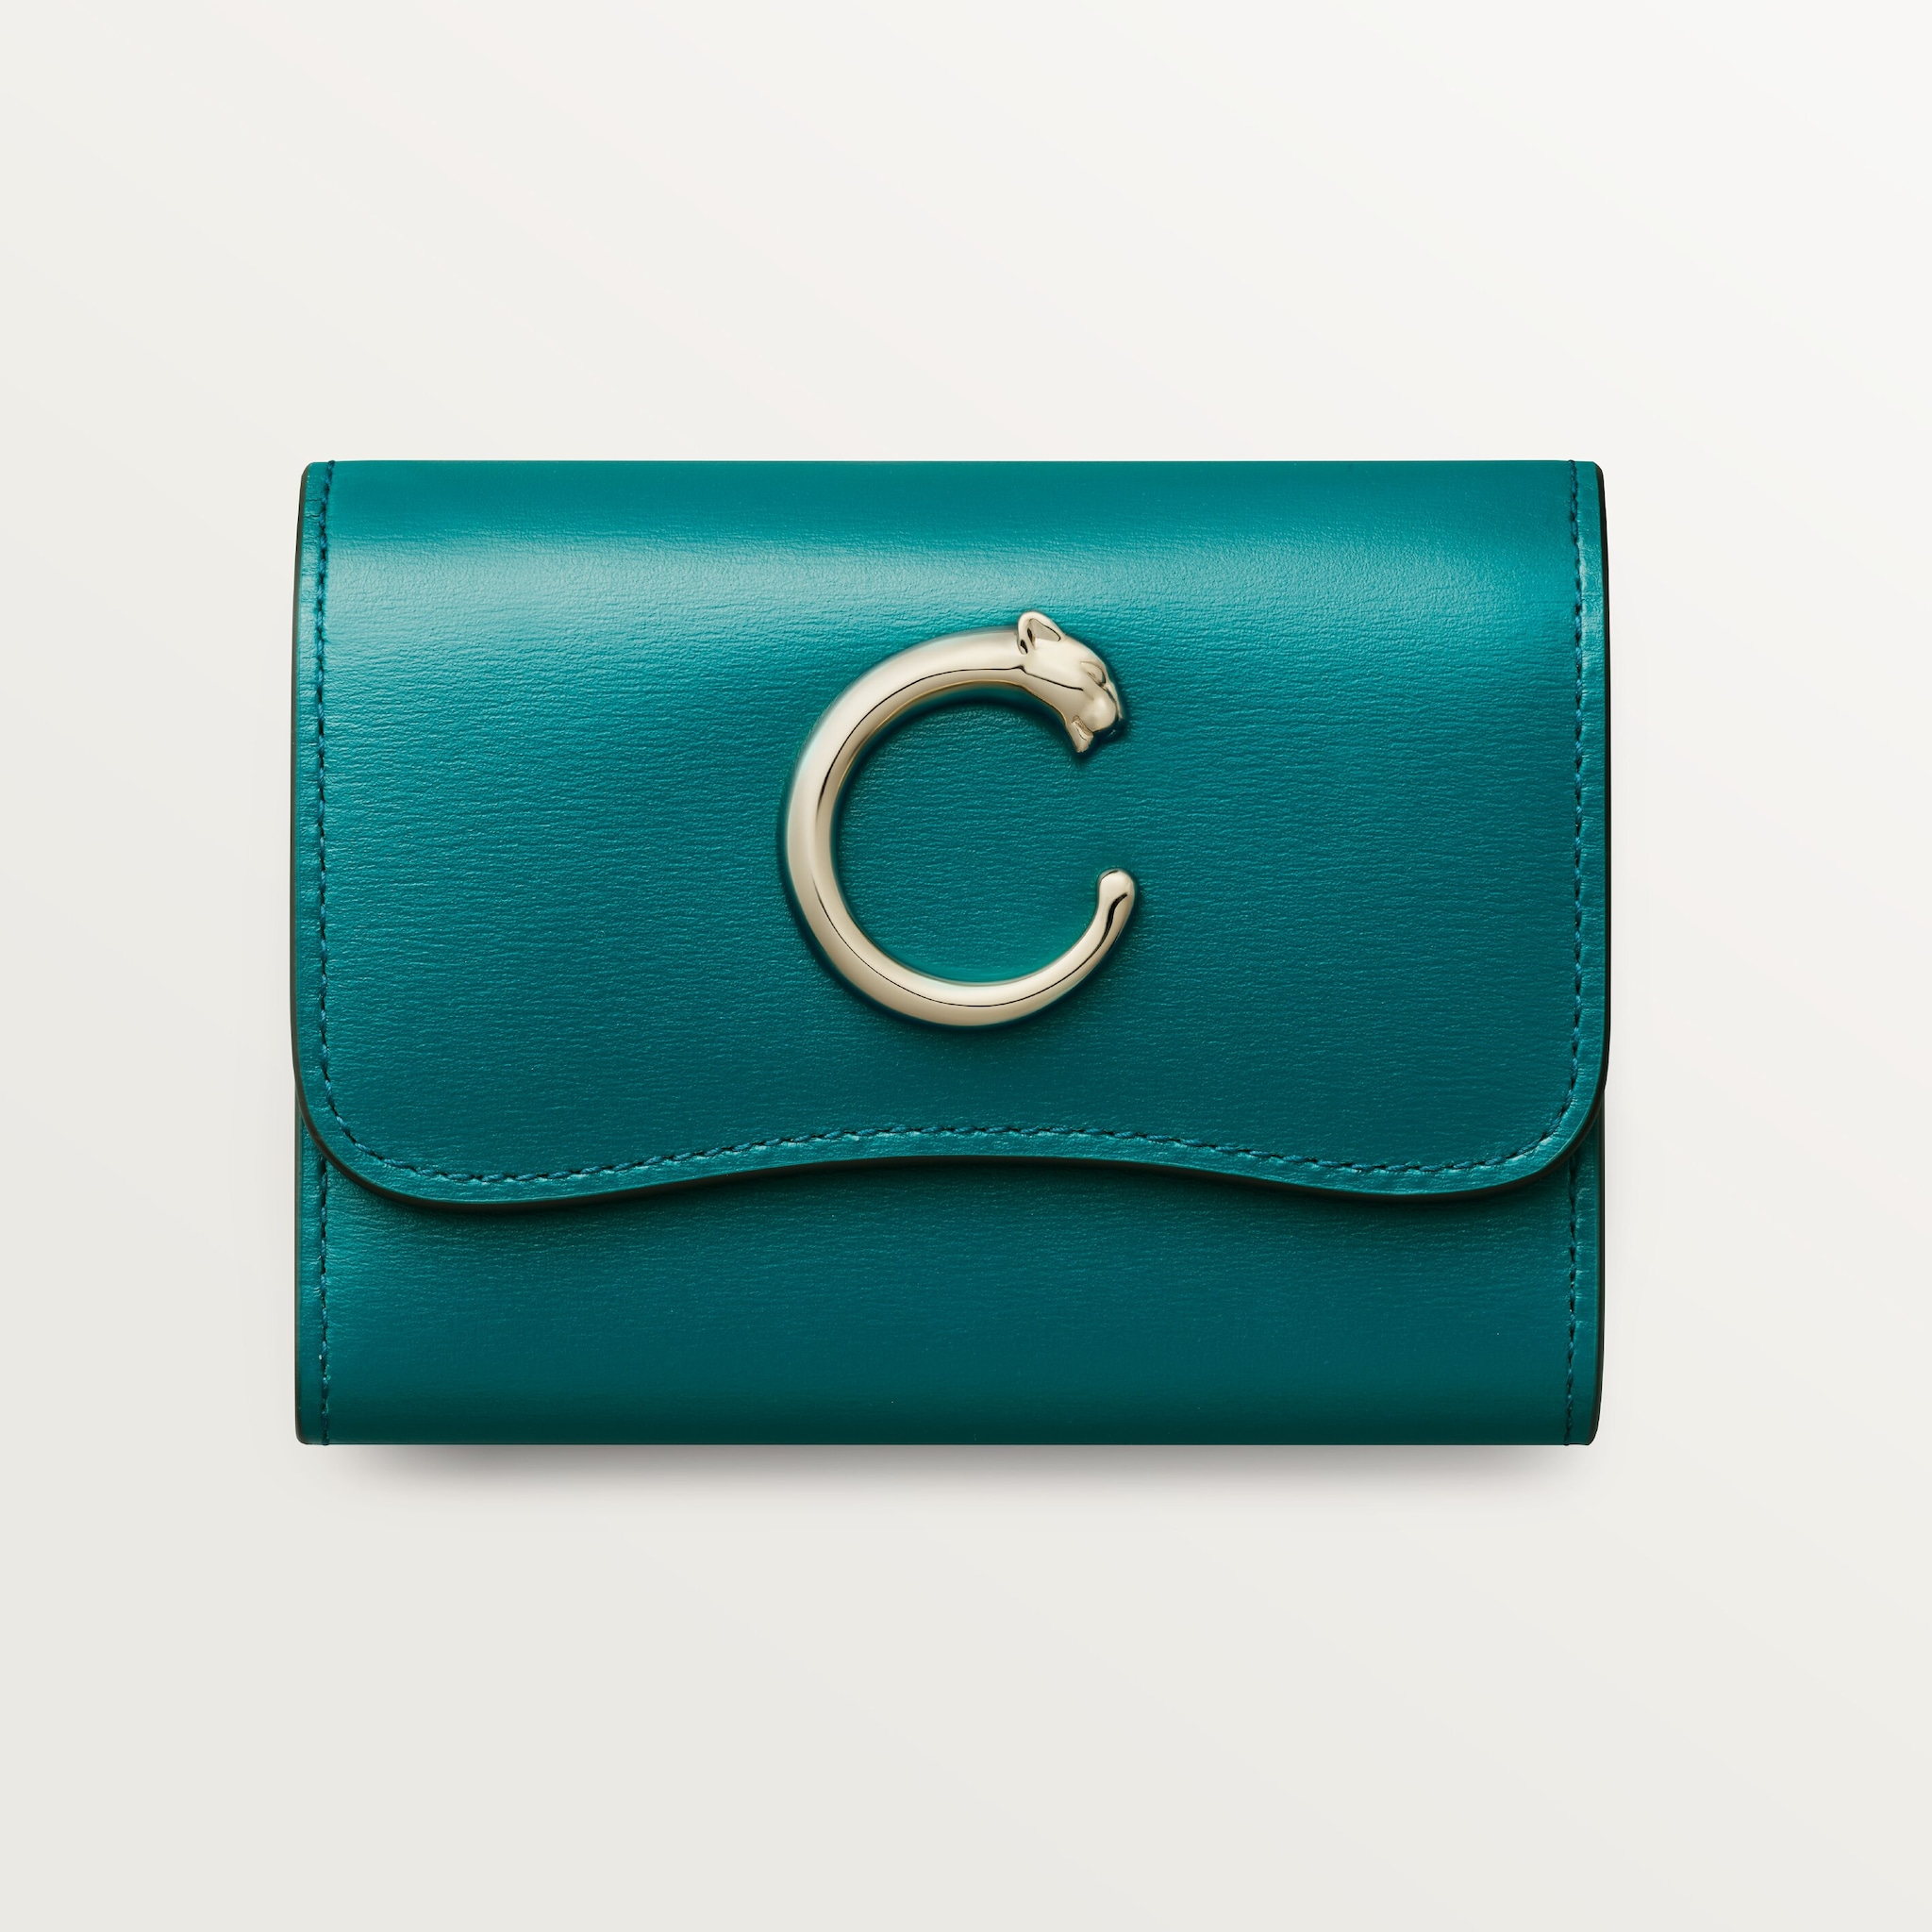 Mini wallet, Panthère de CartierPetrol blue calfskin, golden finish